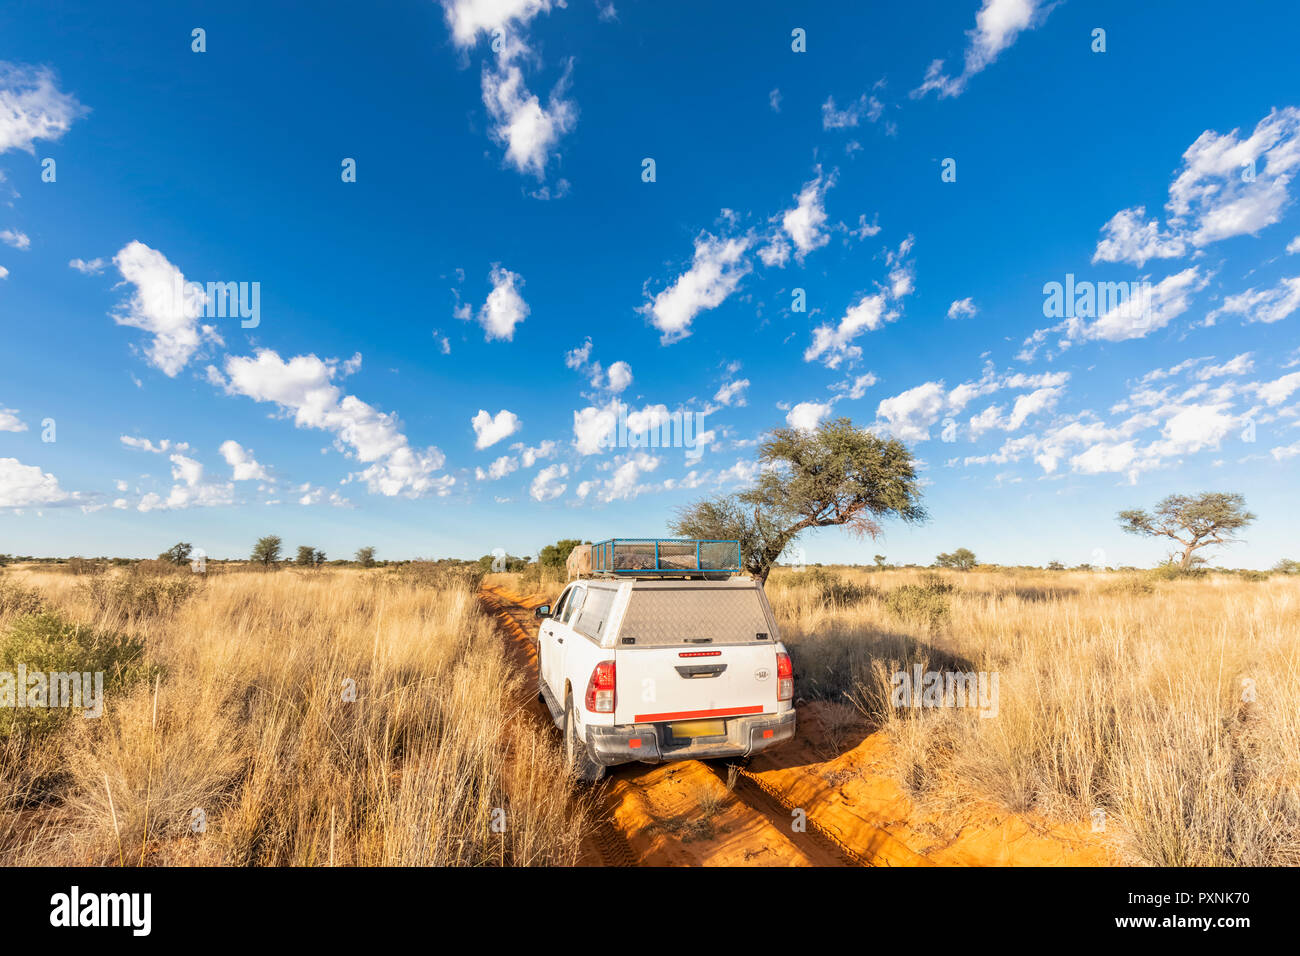 Africa, Botswana, Kgalagadi Parco transfrontaliero, Mabuasehube Game Reserve, veicolo fuoristrada sulla pista di sabbia Foto Stock